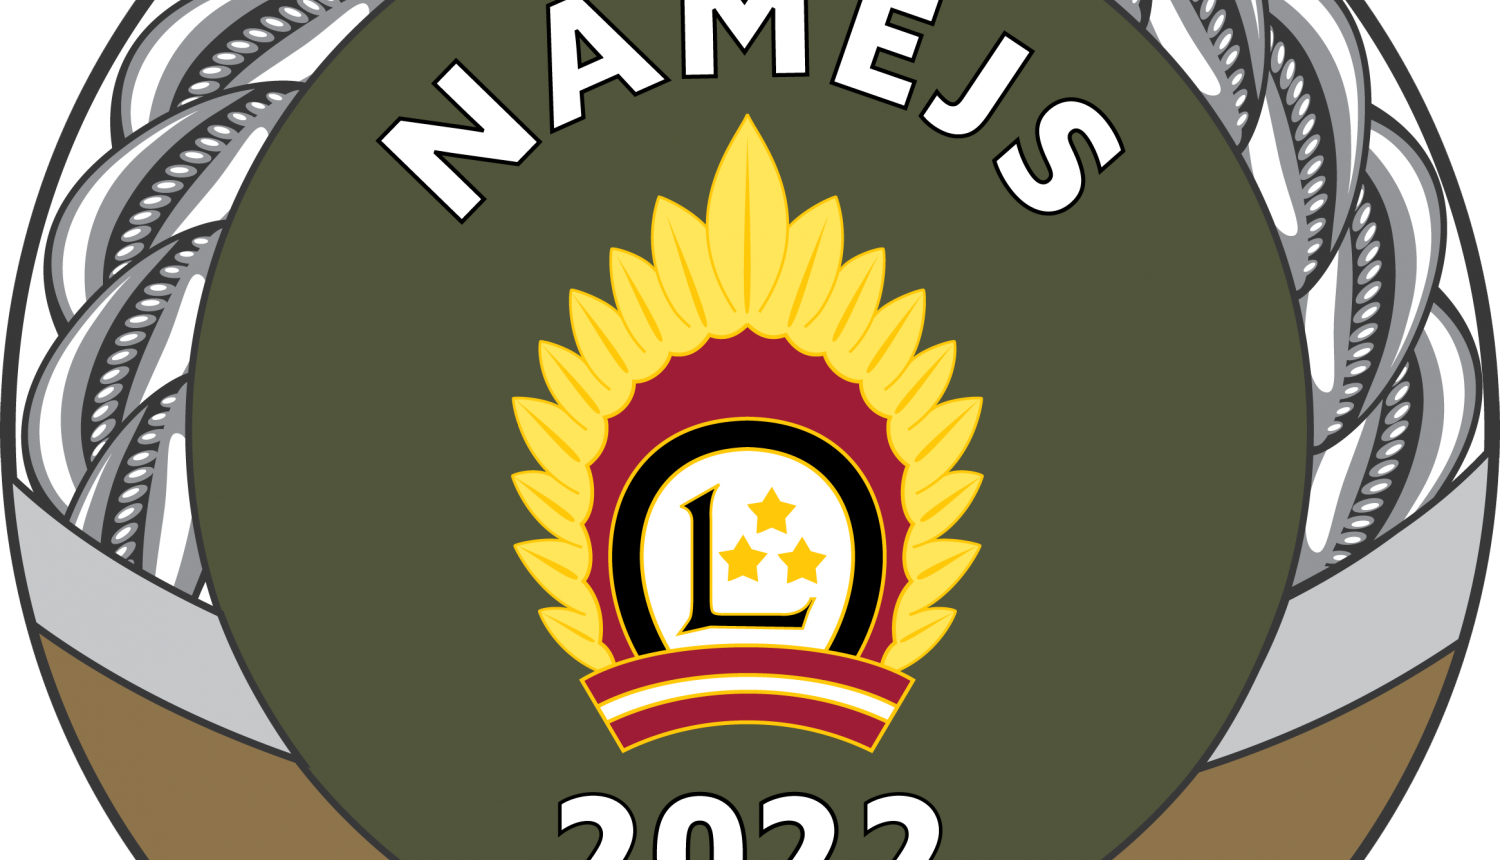 Valkas novadā notiks militārās mācības “Namejs 2022”